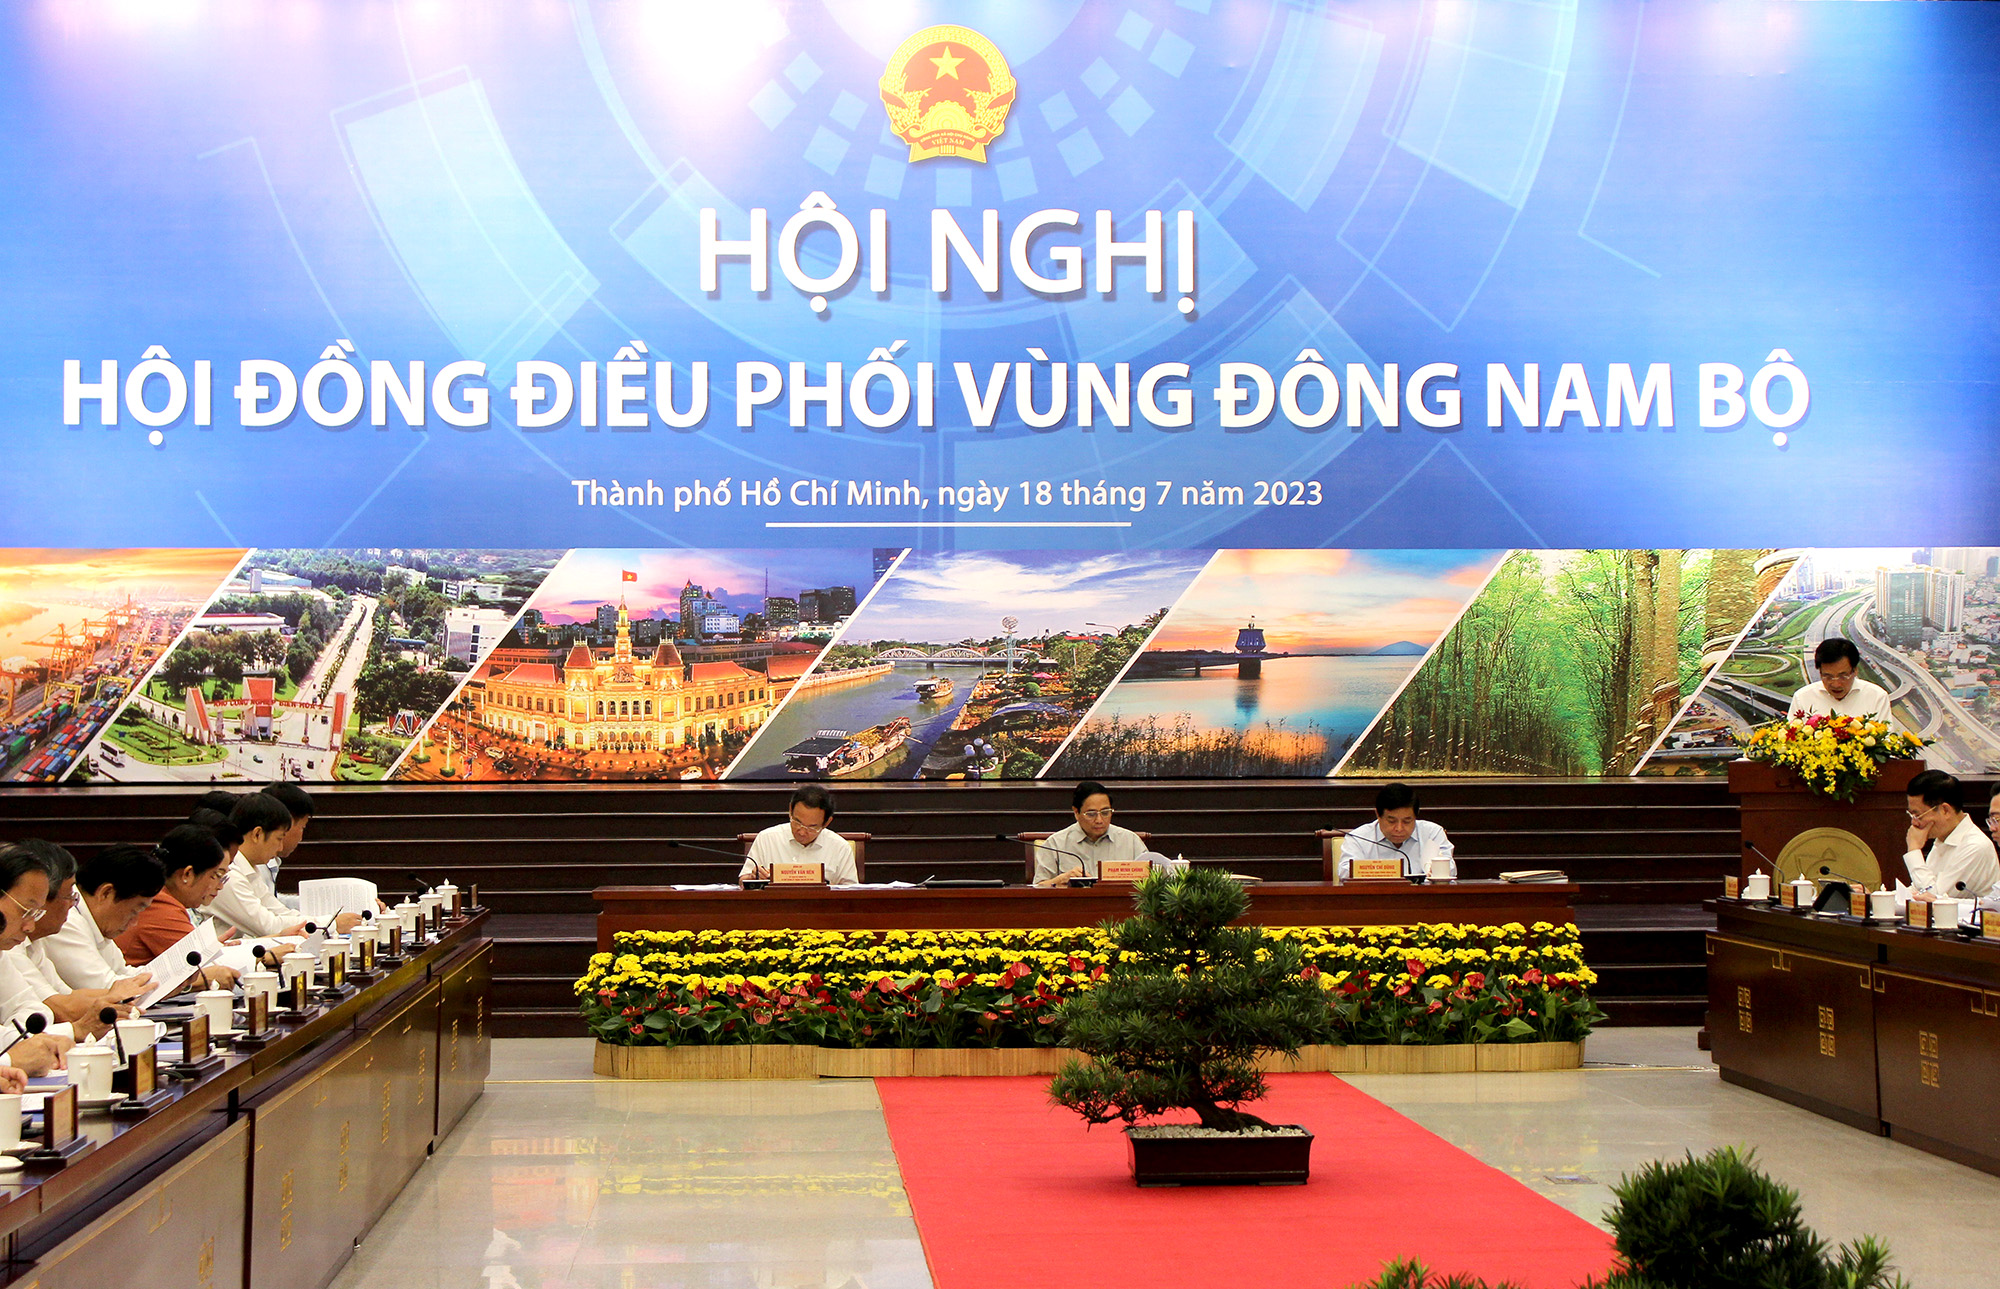 Thủ tướng Phạm Minh Chính, Bí thư Thành ủy Nguyễn Văn Nên và Bộ trưởng Bộ Kế hoạch và Đầu tư chủ trì tại Hội nghị điều phối vùng Đông Nam Bộ sáng 18-07-2023 (Ảnh: Thành Nhân).